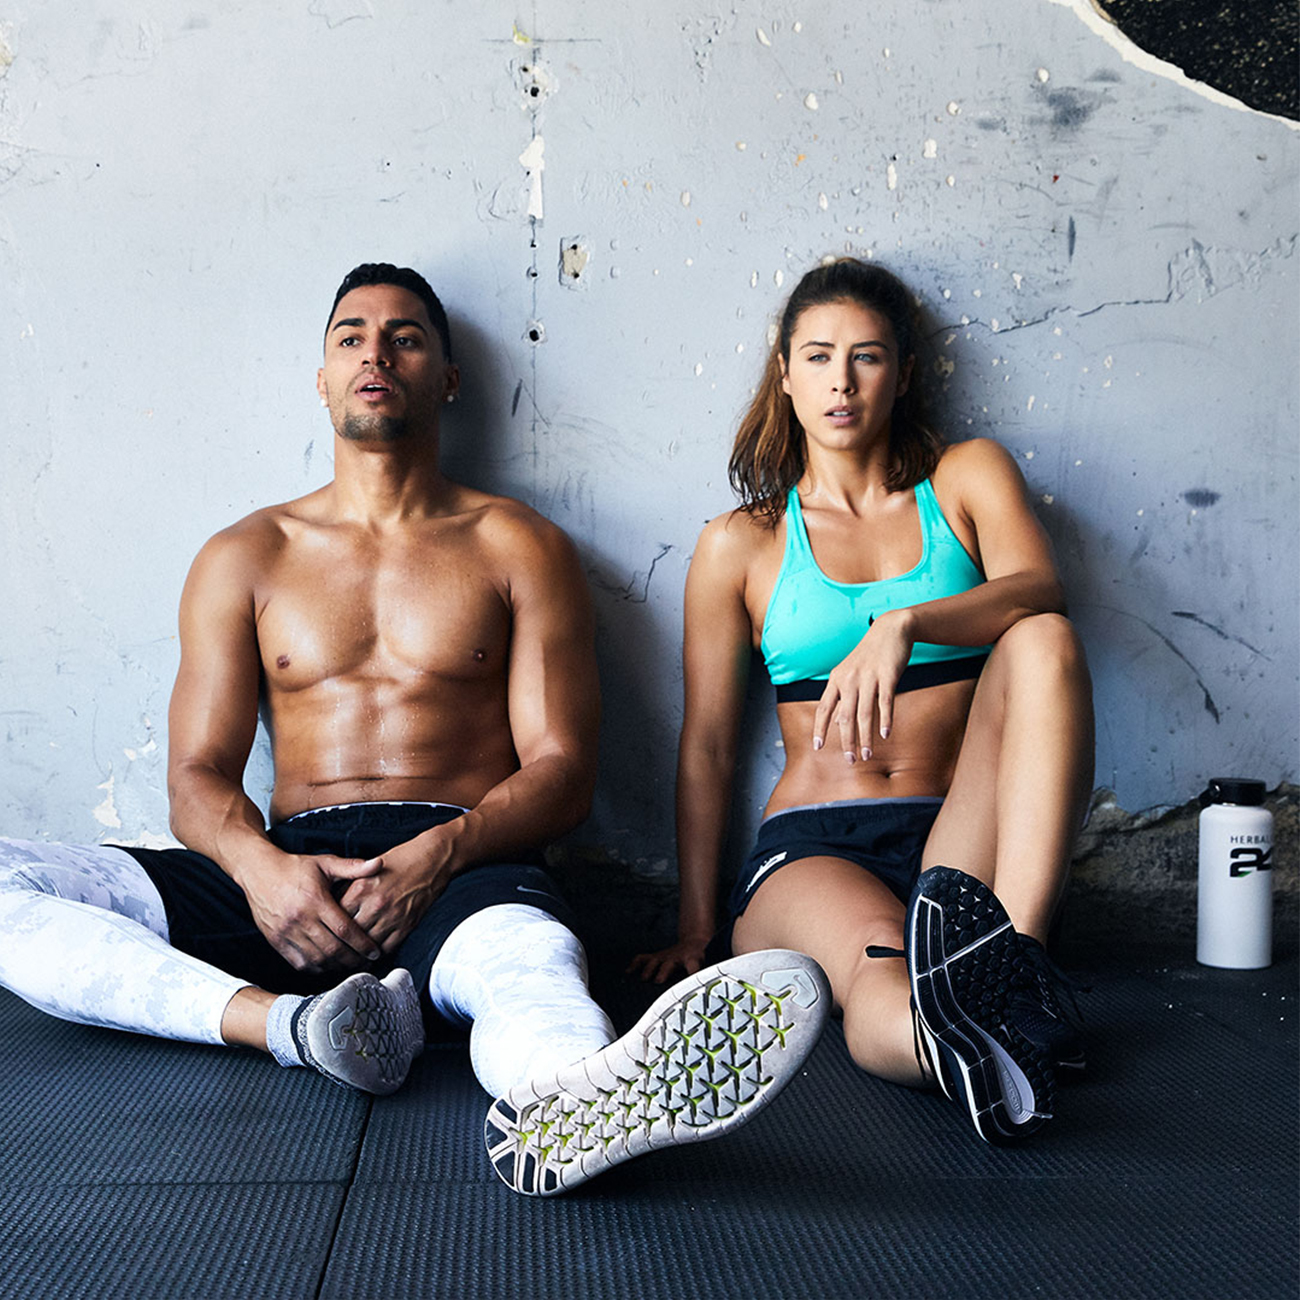 Moški in ženska v telovadnici sedita na tleh in počivata po intenzivni vadbi.